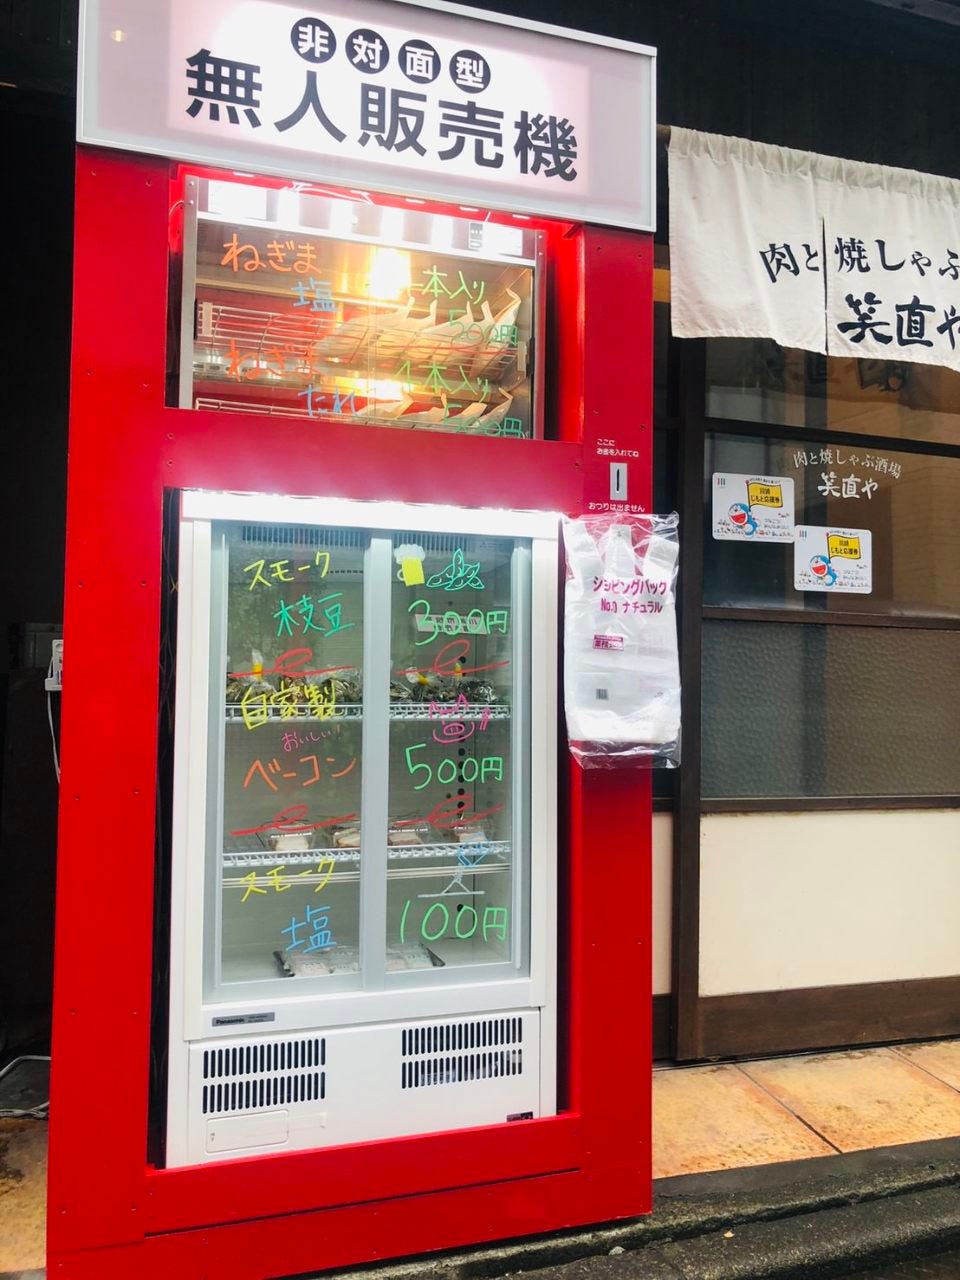 21年 最新グルメ 川崎にある馬刺しが食べられるお店 レストラン カフェ 居酒屋のネット予約 神奈川版